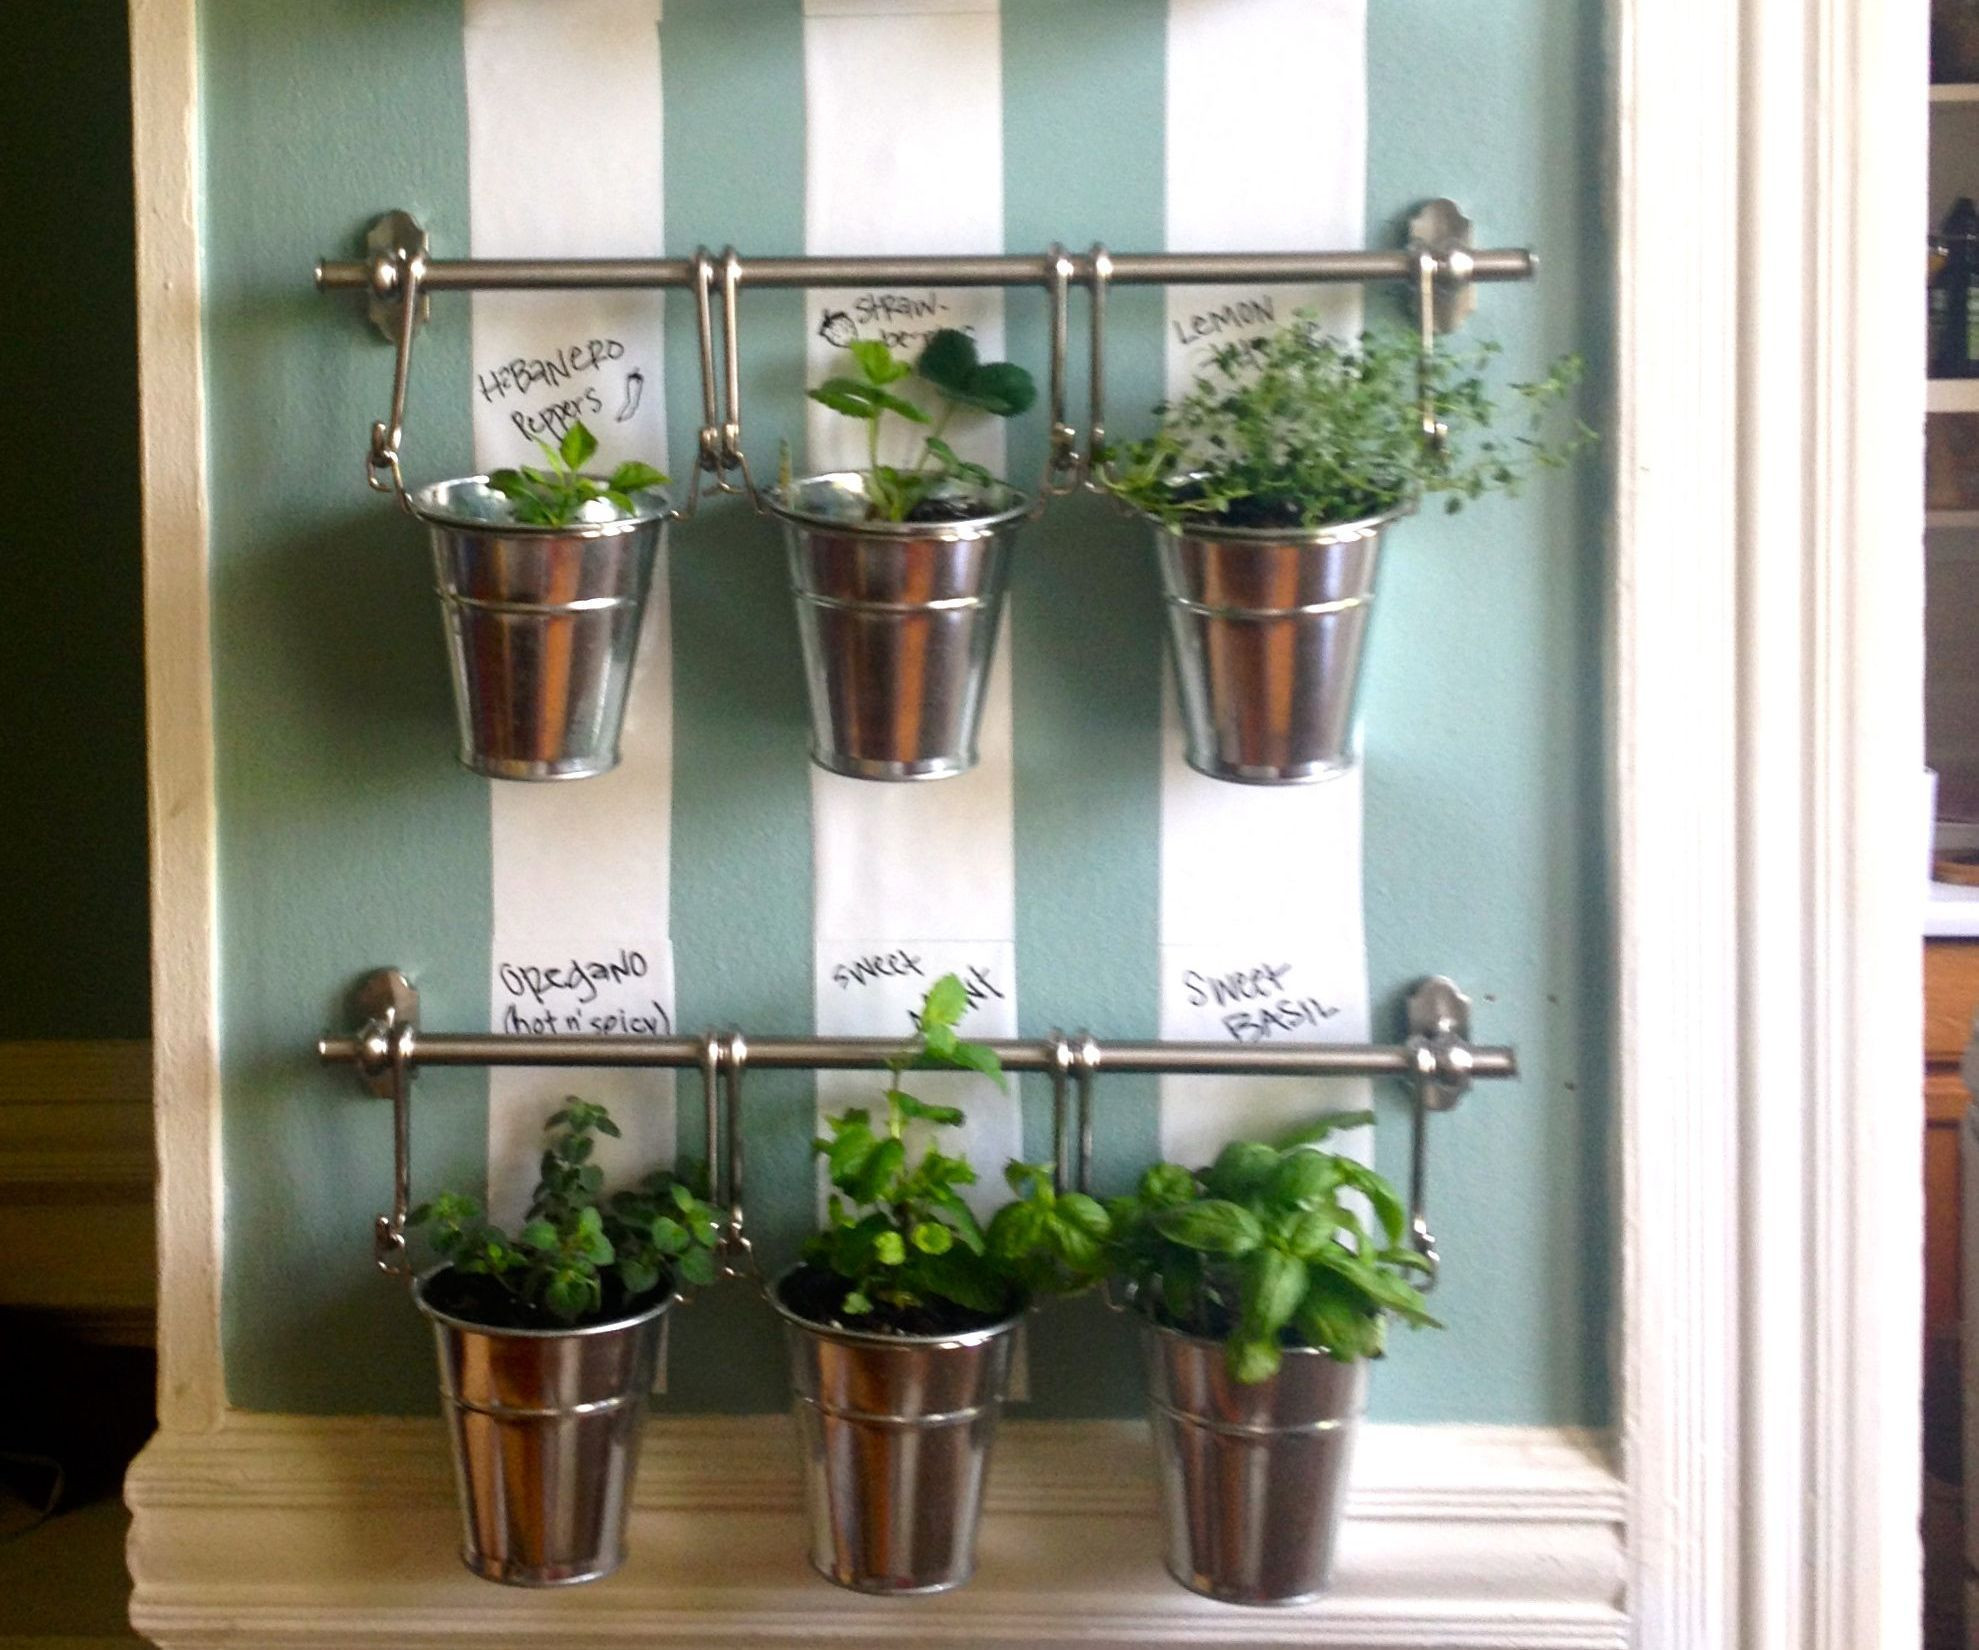 Best ideas about Indoor Herb Garden Planters
. Save or Pin Hanging Indoor Herb Garden Now.